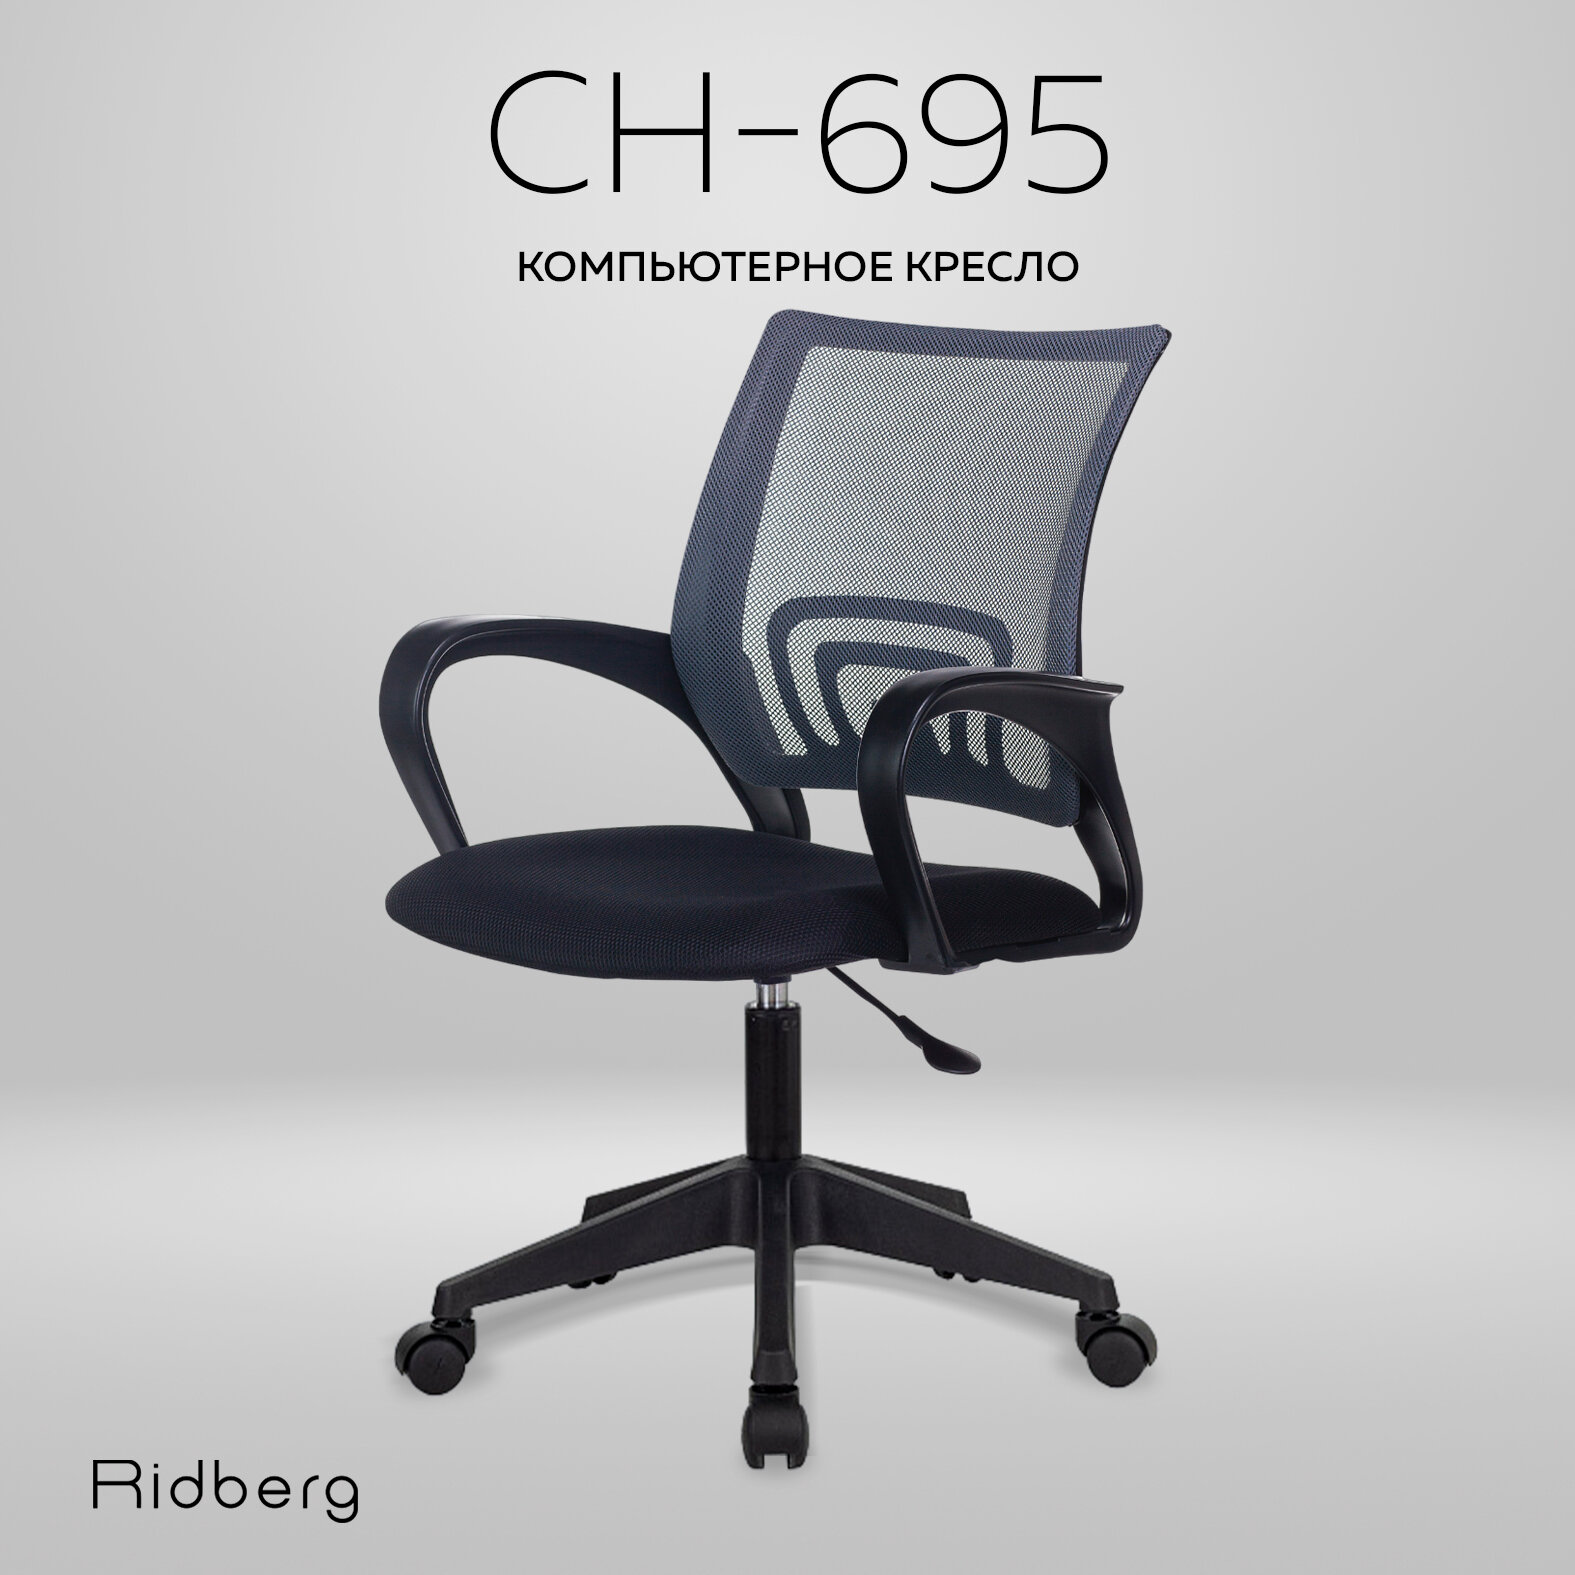 Компьютерное офисное кресло RIDBERG CH-695 черно-серый / Детское кресло с подлокотниками на колесах / Стул компьютерный для руководителя